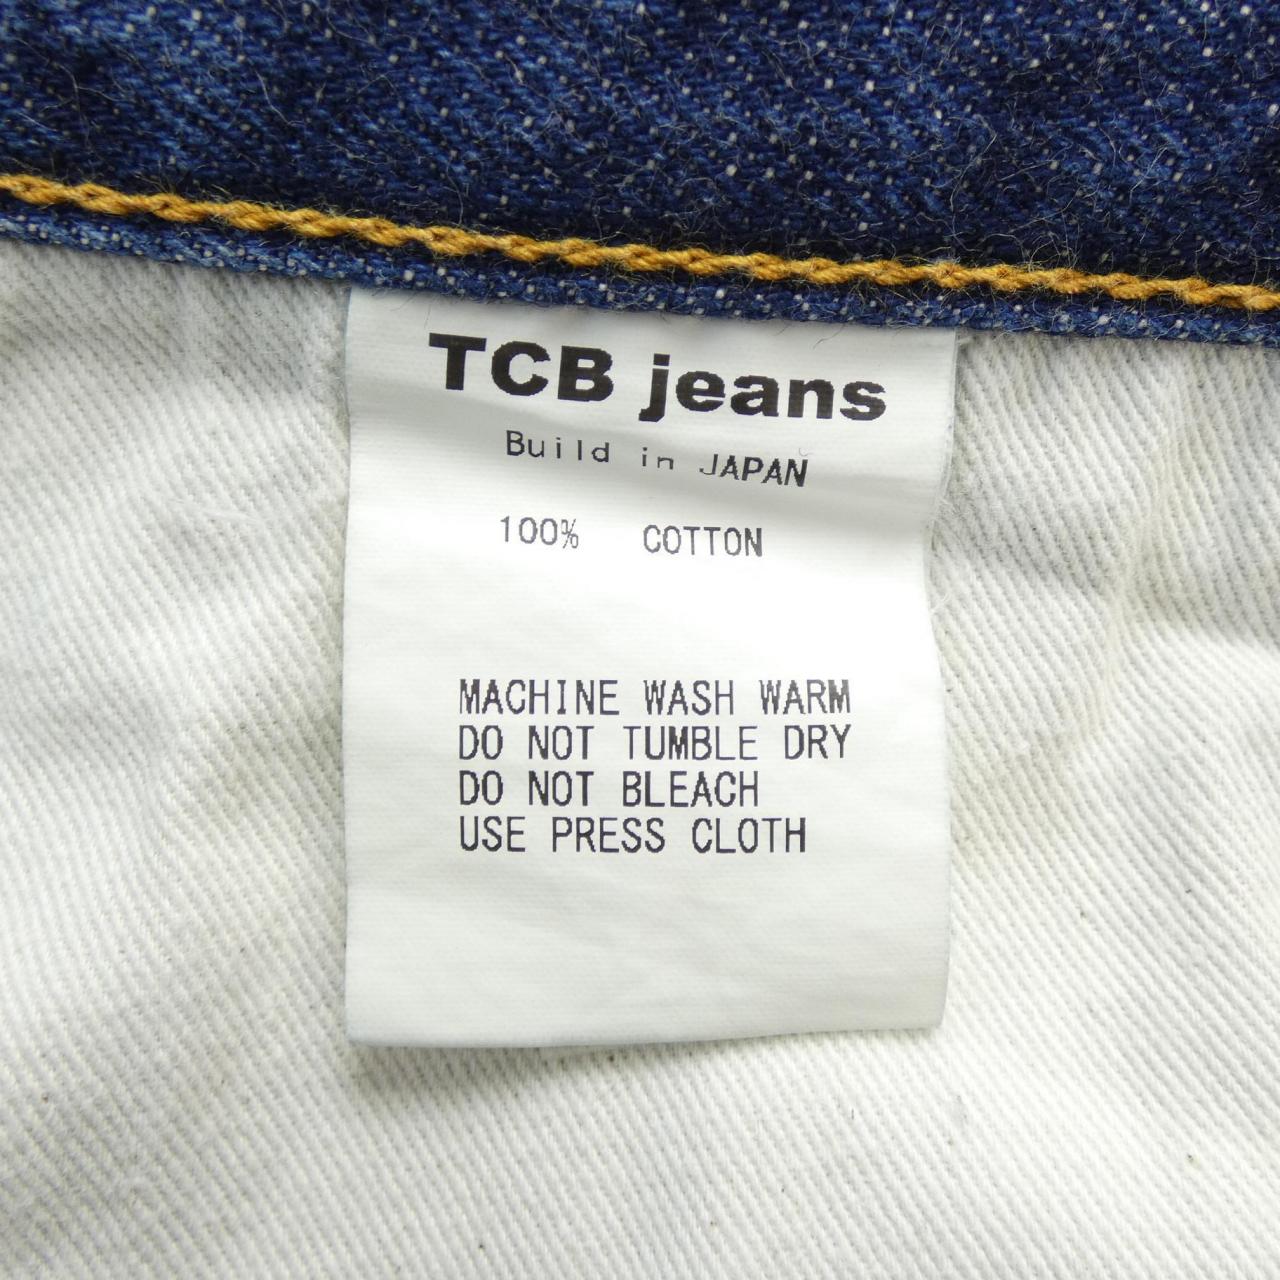 TCBJEANS Jeans